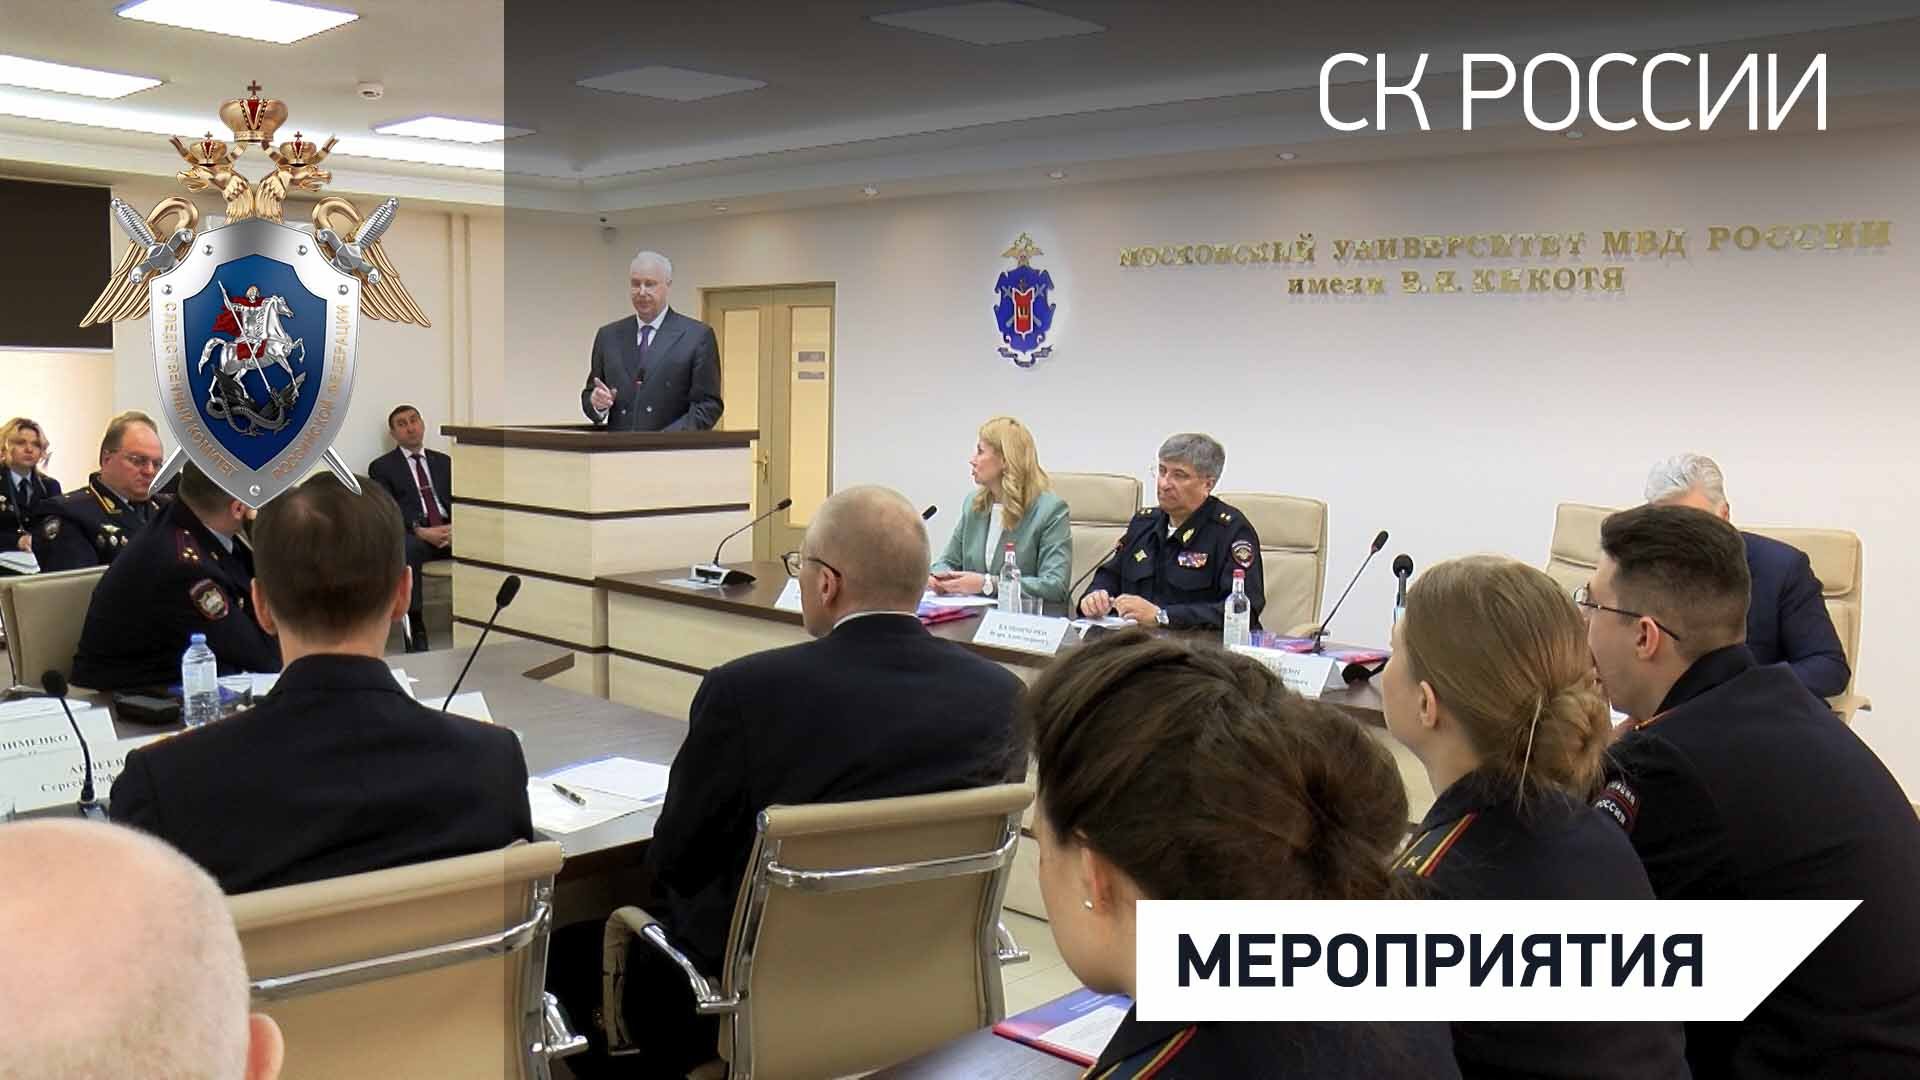 Председатель СК России принял участие во Всероссийской научно-практической конференции